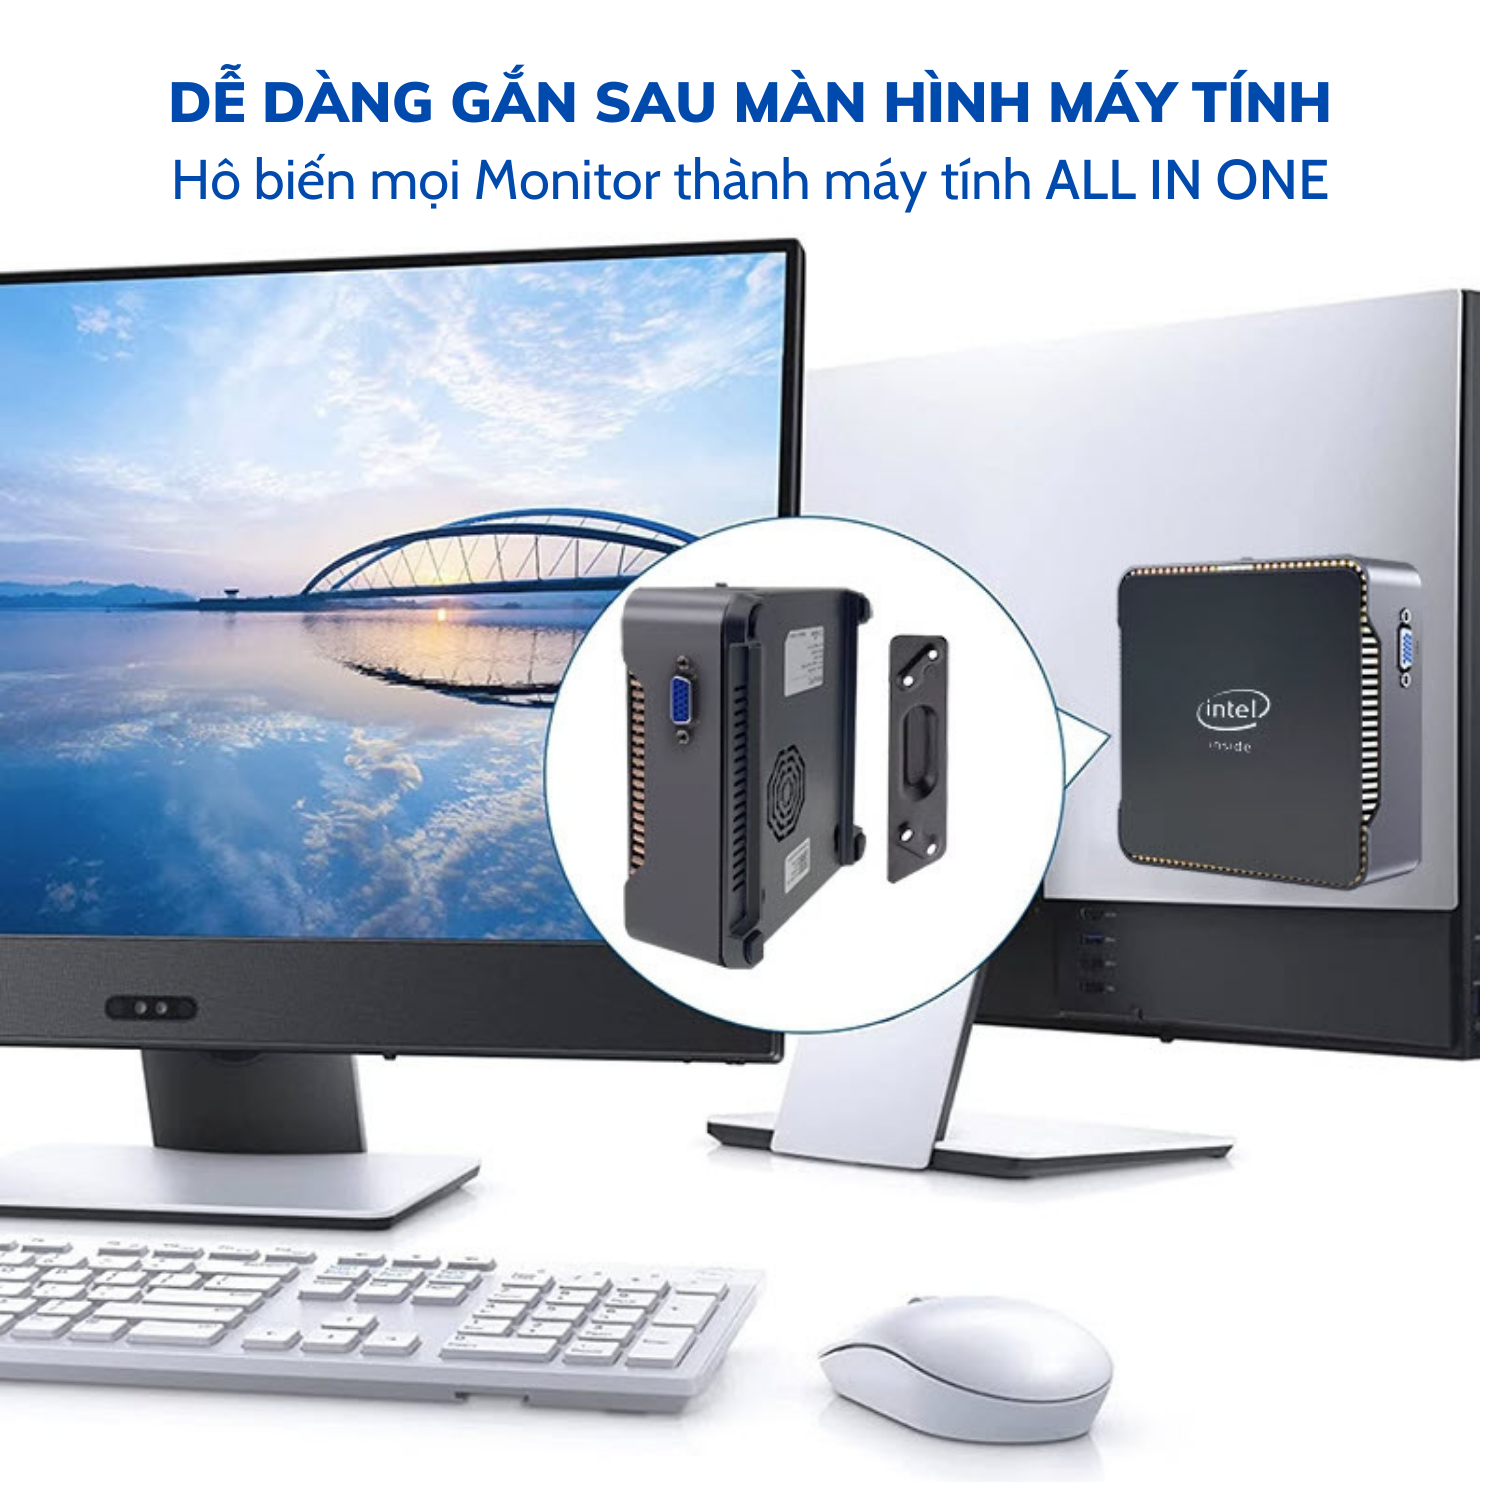 Máy tính để bàn - Máy chủ Server - Mini PC - Intel NUC NiPoGi